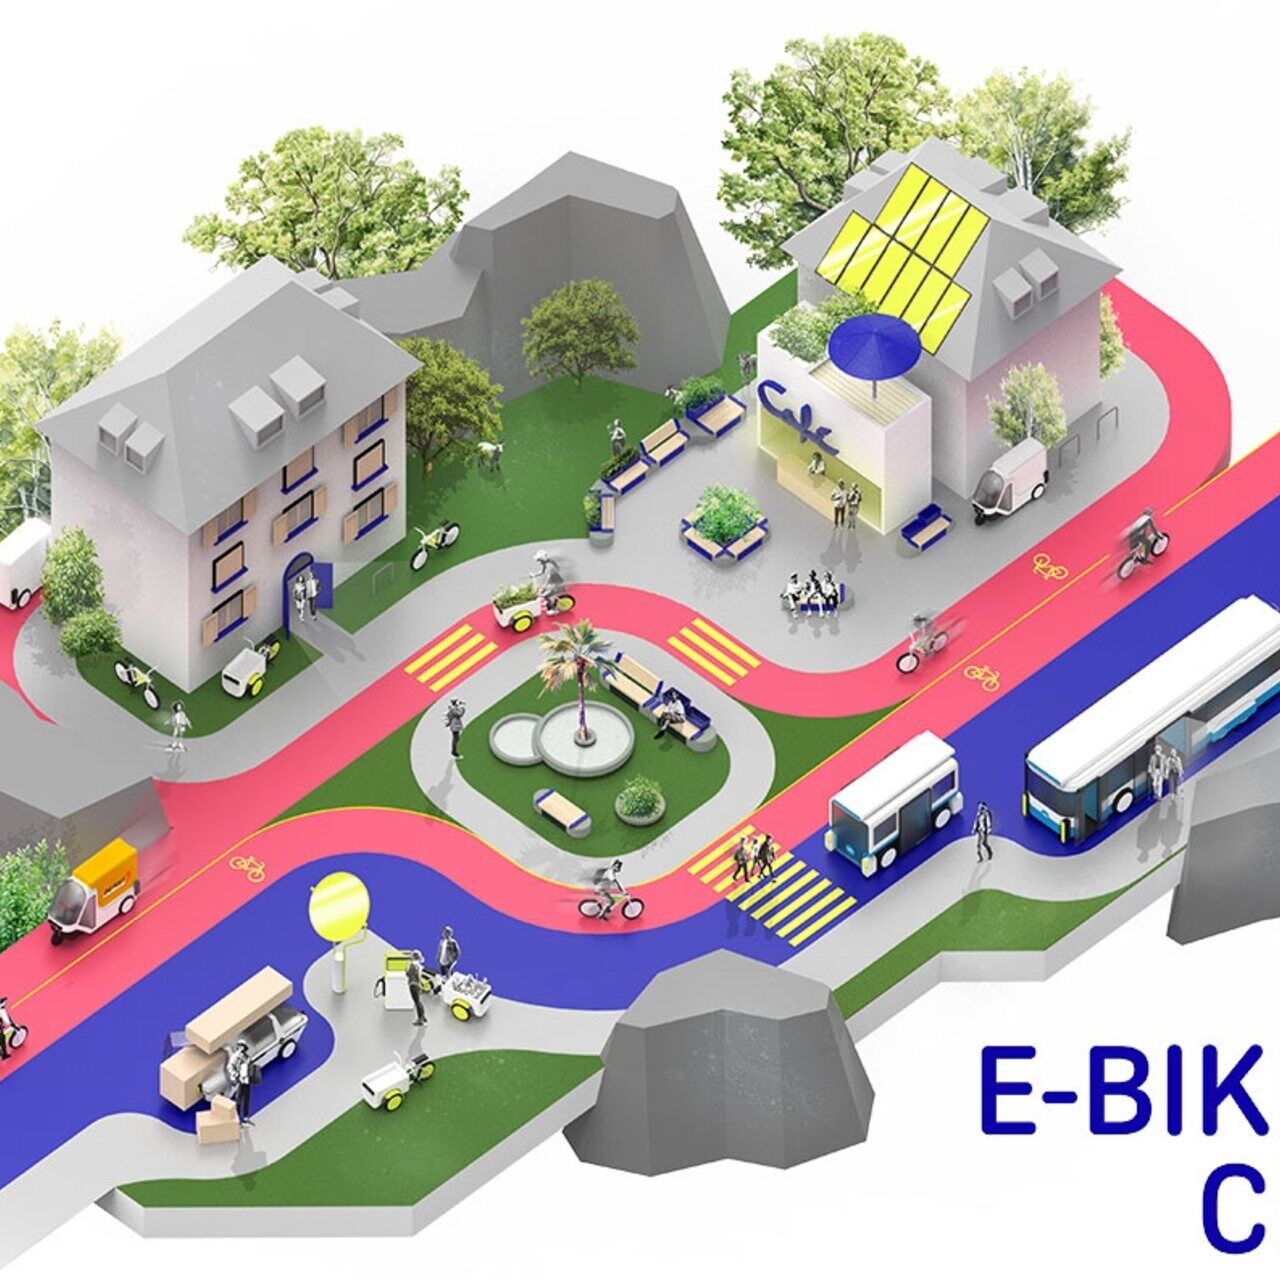 Električni bicikli: stilizirani primjer E-​Bike Cityja s jednosmjernim ulicama za automobile i dvosmjernim ulicama za bicikle